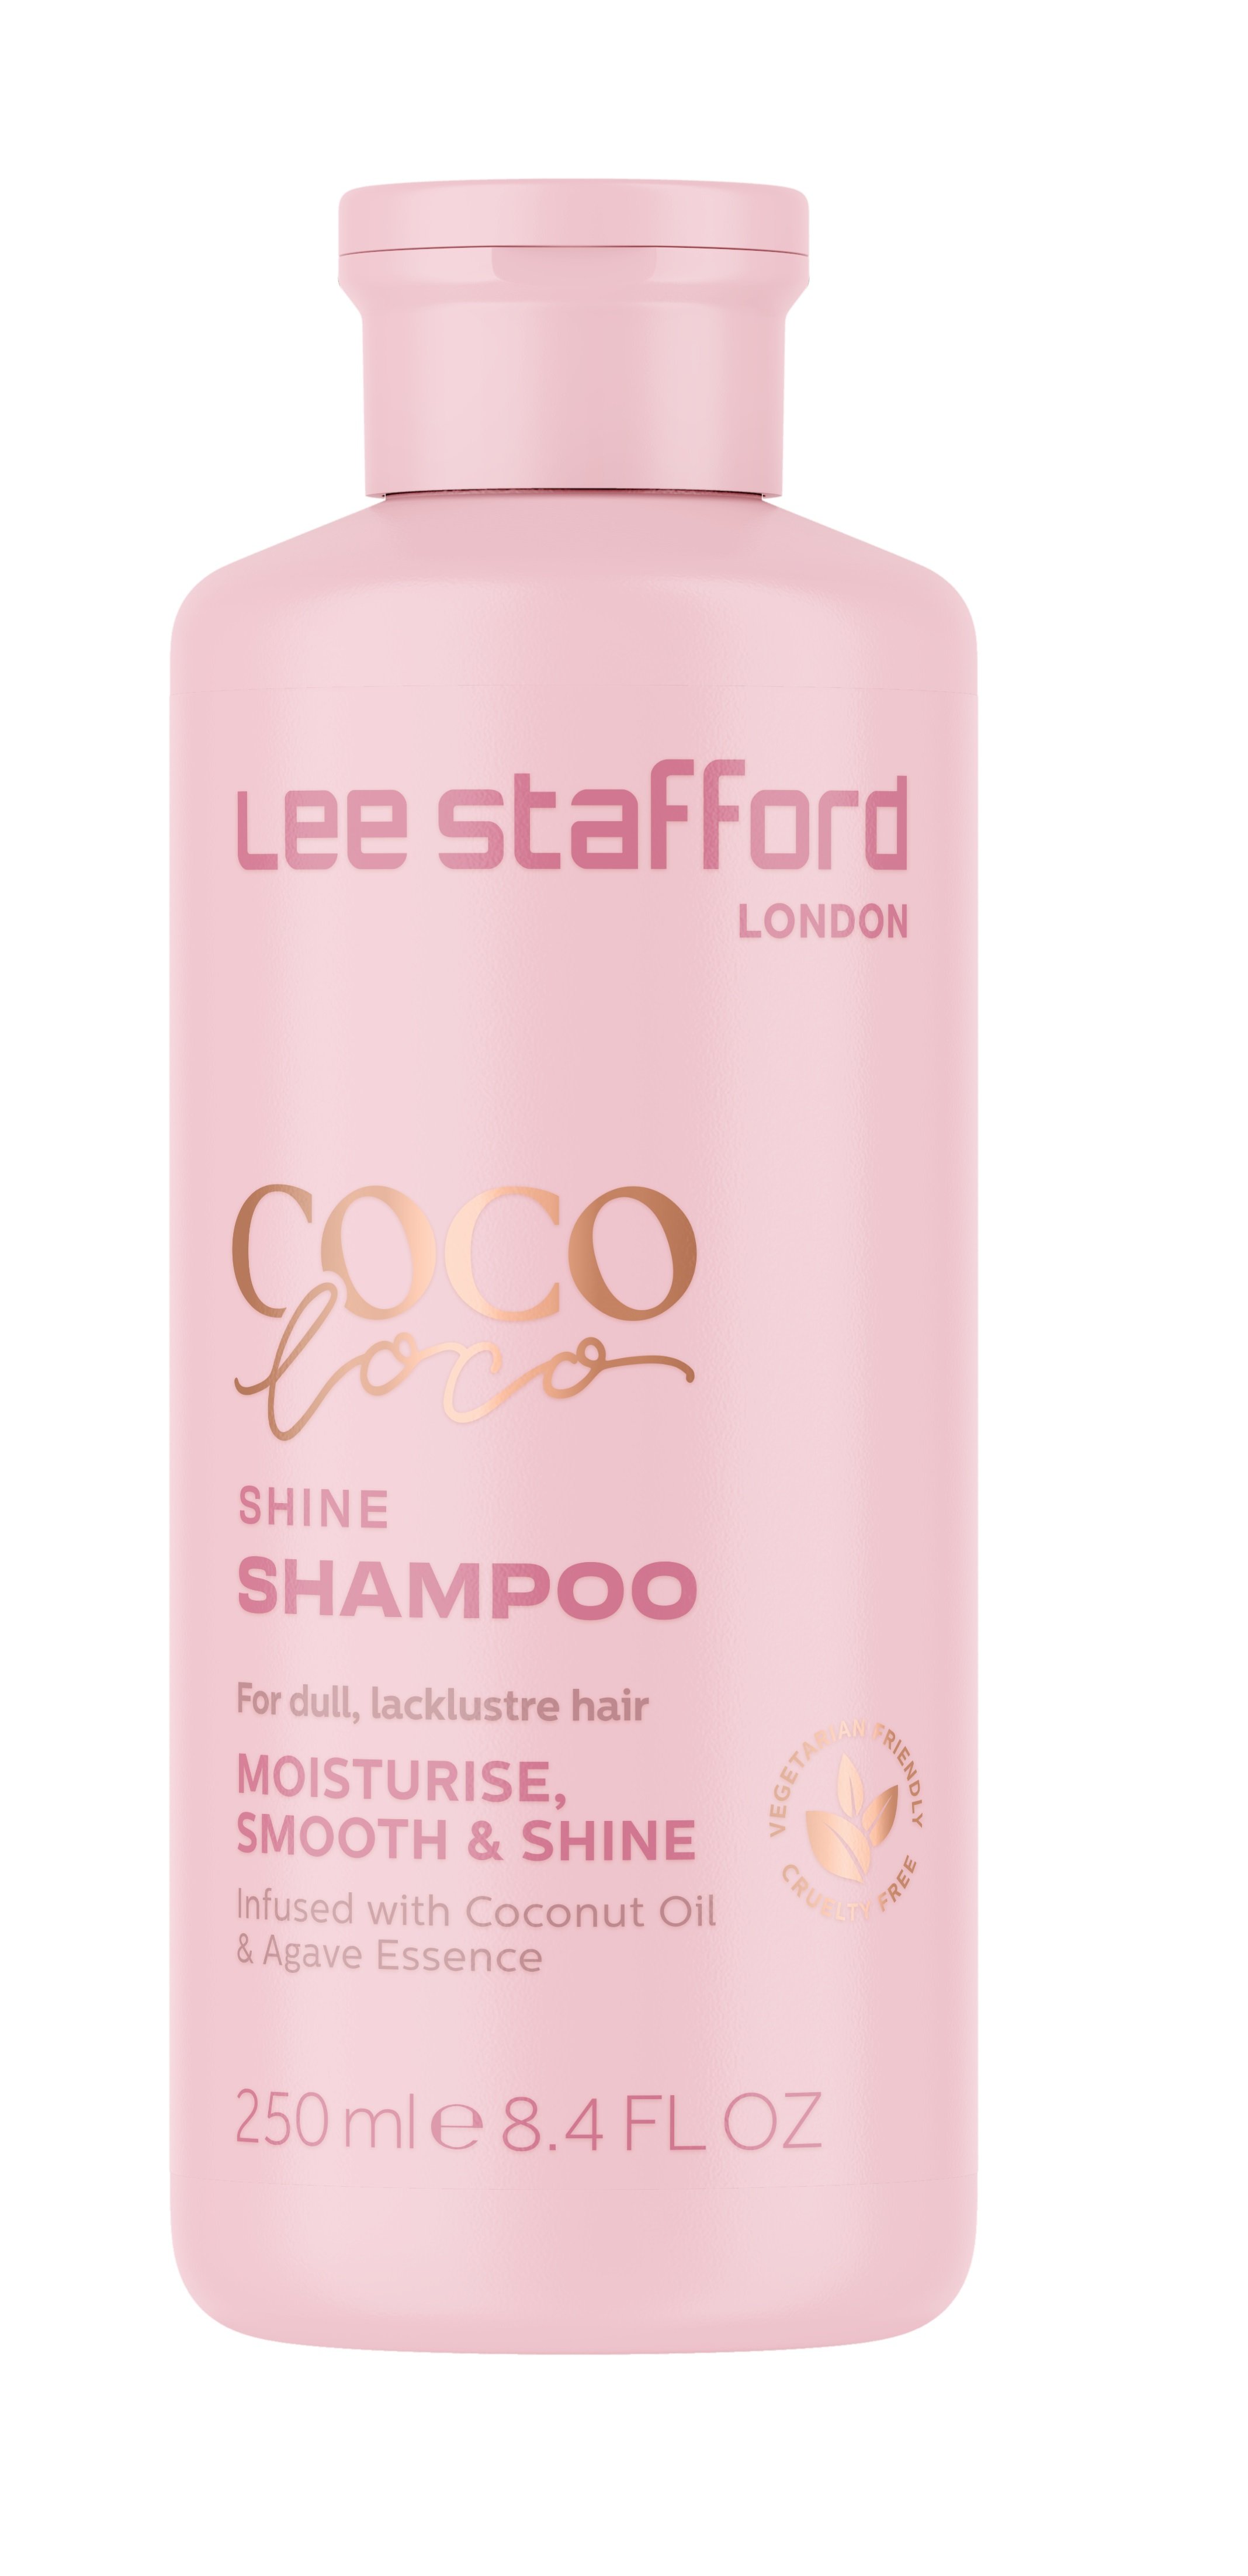 Lee Stafford - Coco Loco Shine Shampoo 250 ml - Skjønnhet